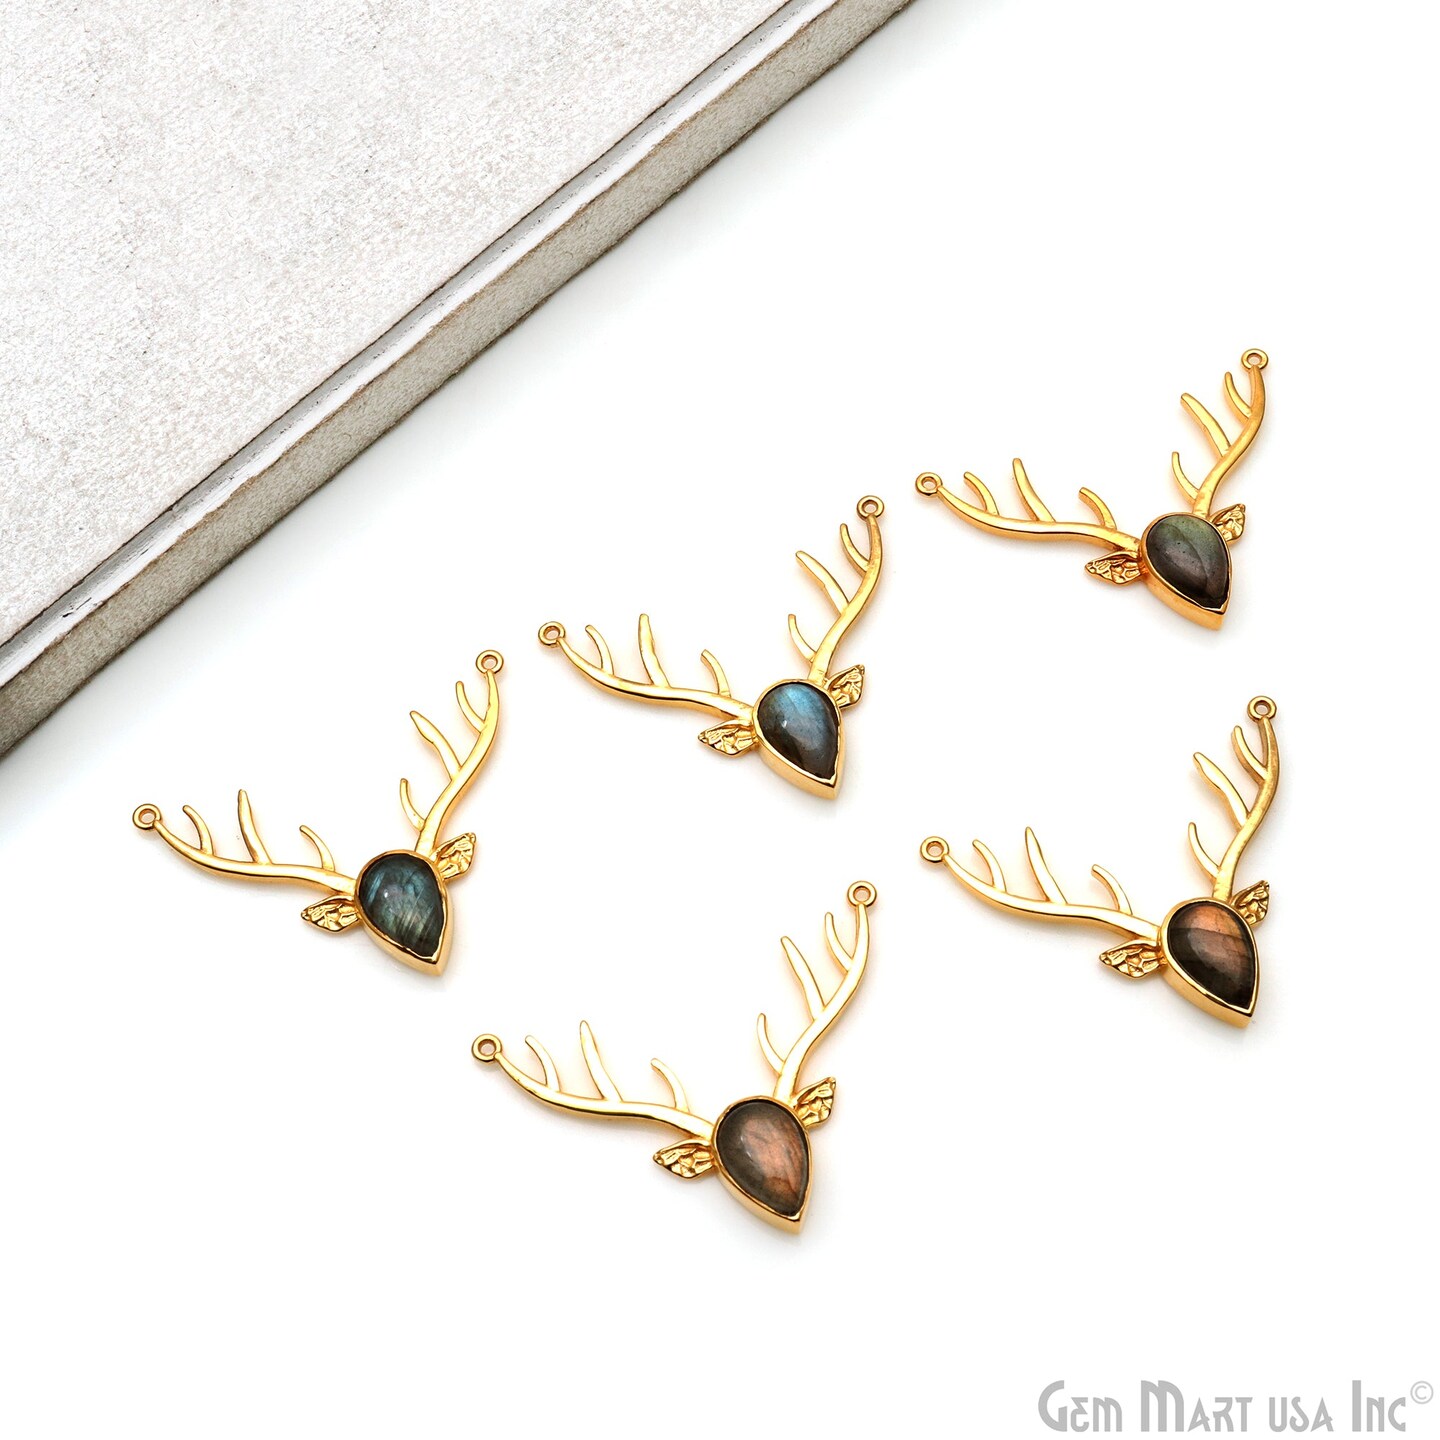 Reindeer Horn Necklace Pendant, Labradorite Gemstone Reindeer Head, Antlers/ Horns, 42x14mm, Horn Necklace, GemMartUSA (LB-50520)